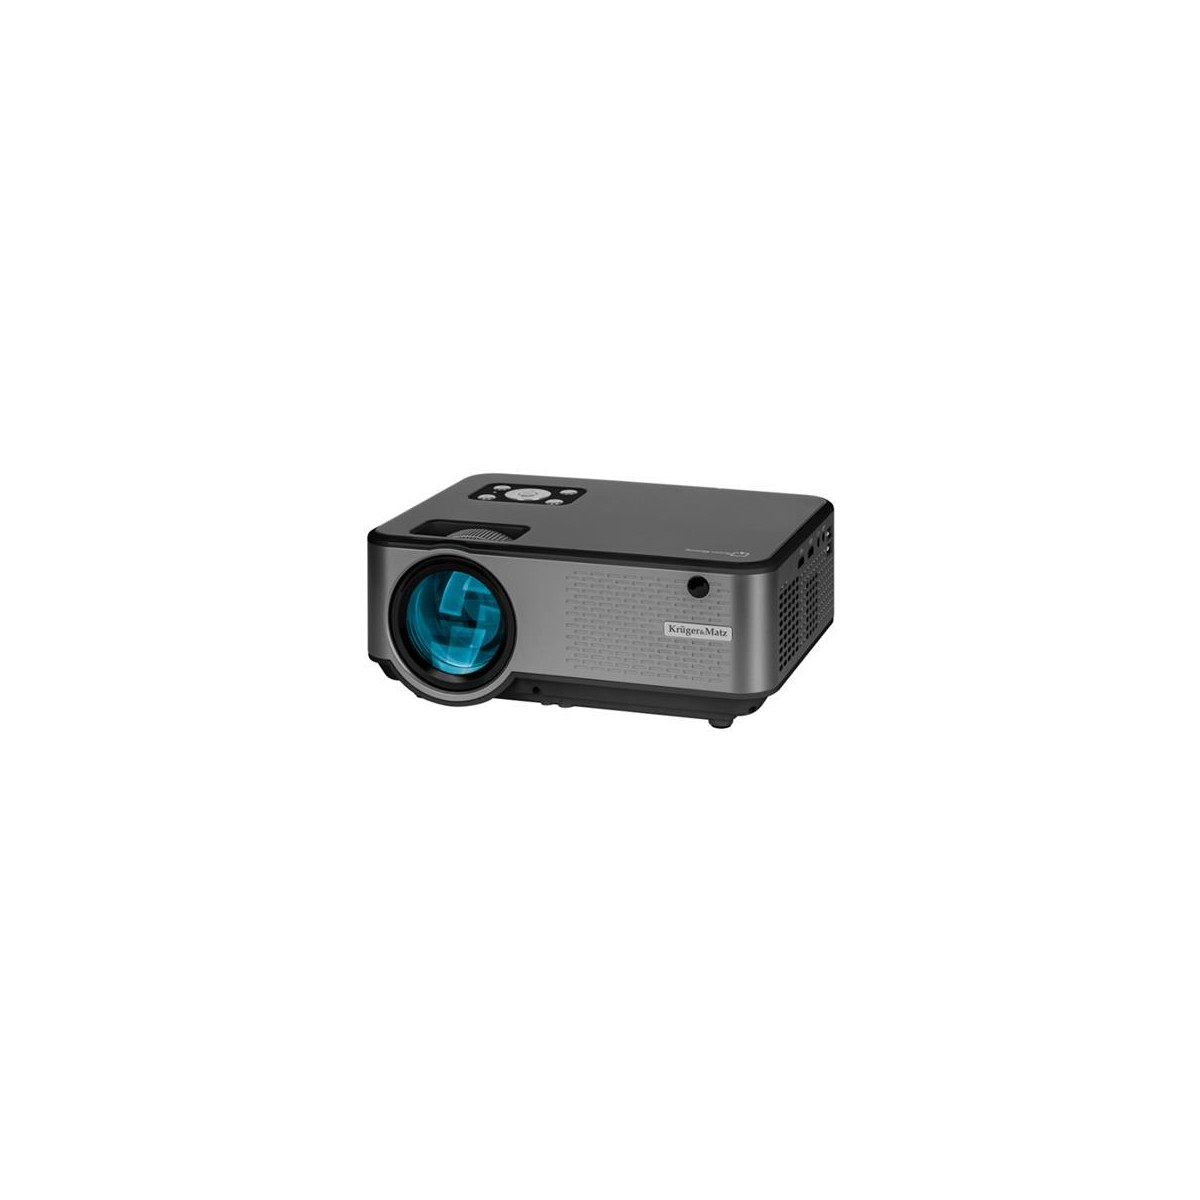 Projektor KRUGER & MATZ V-LED60 KM0371-FHD WiFi